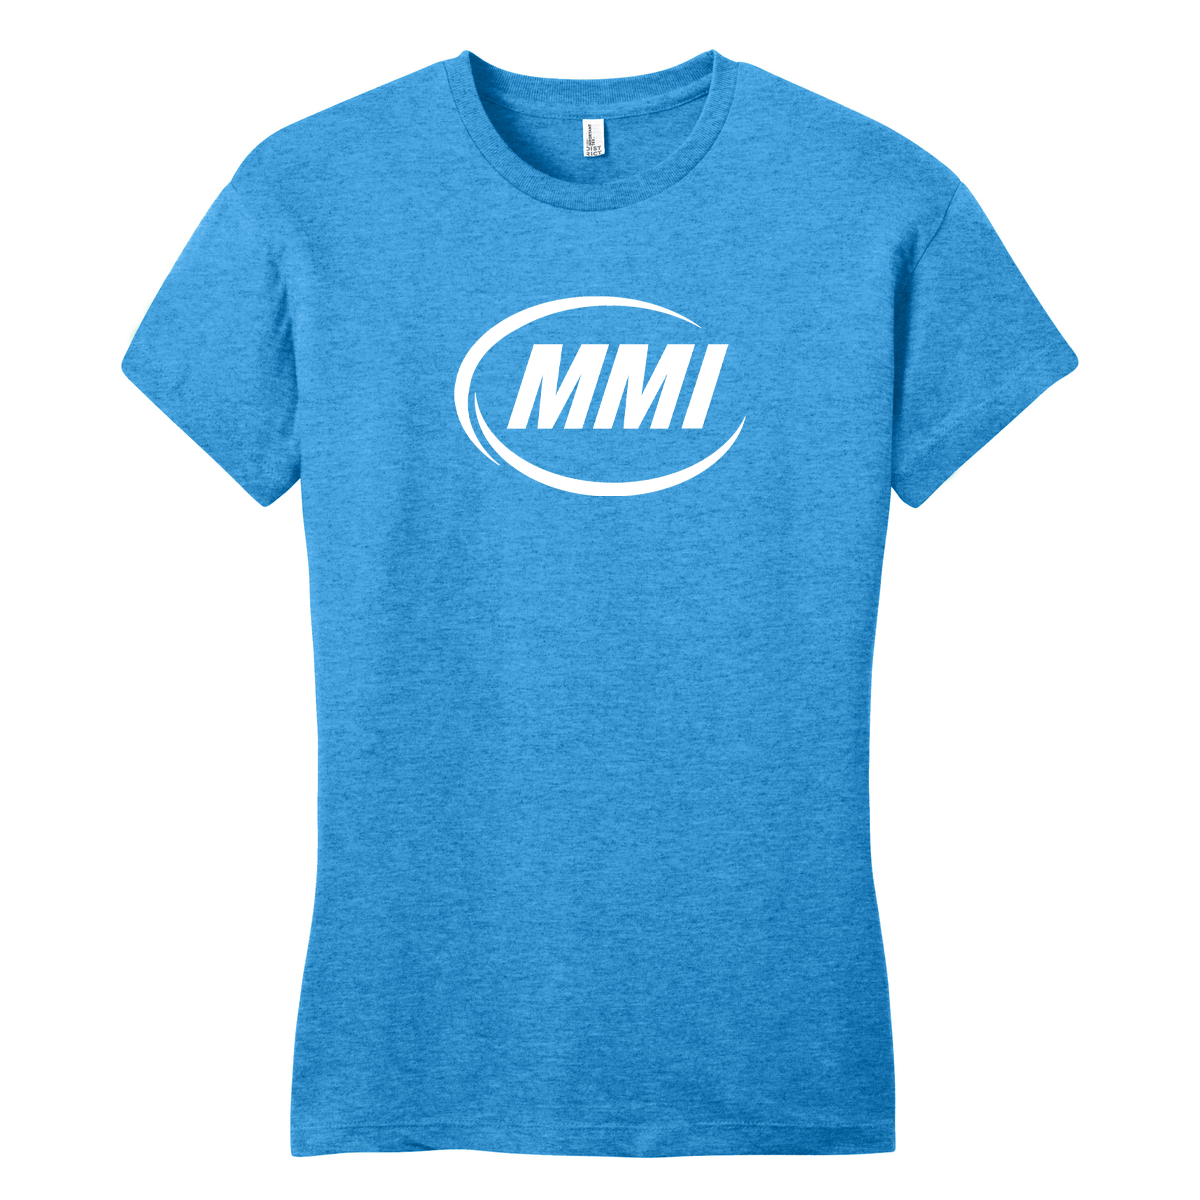 MMI (Marine) Iconic Logo Womens T-Shirt